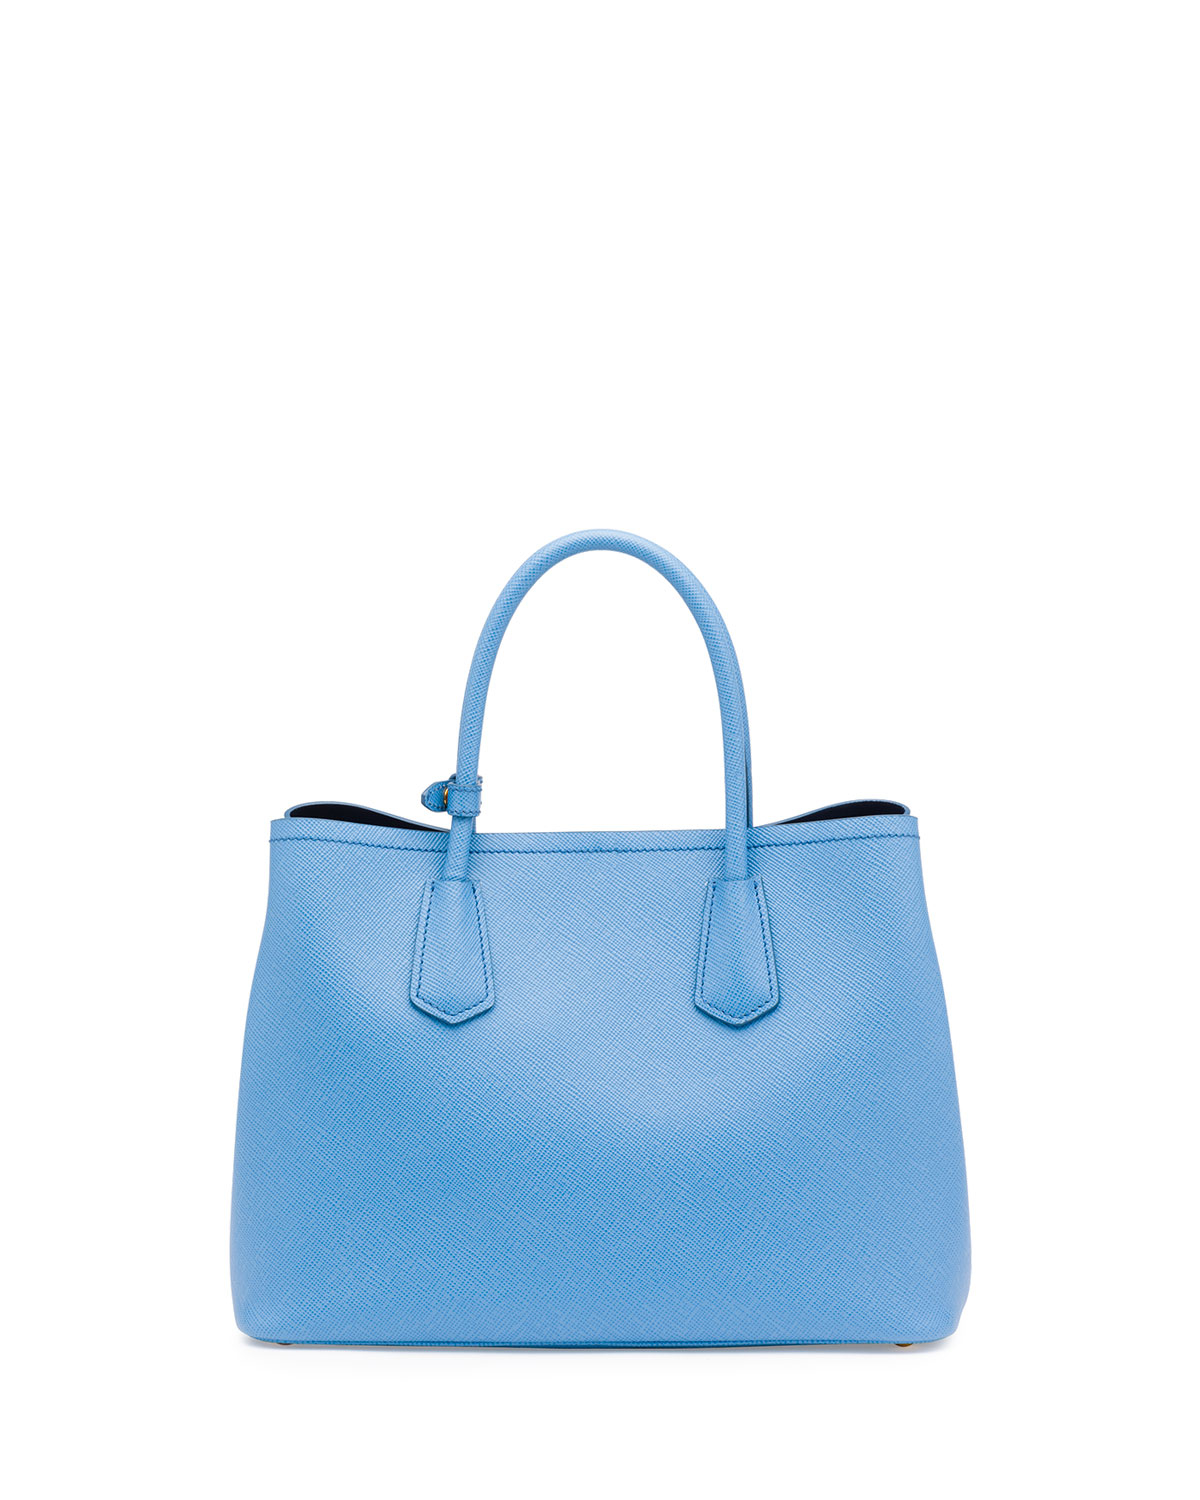 prad handbags - Prada Saffiano Cuir Double Small Tote Bag in Blue (MARE/BLUETTE ...